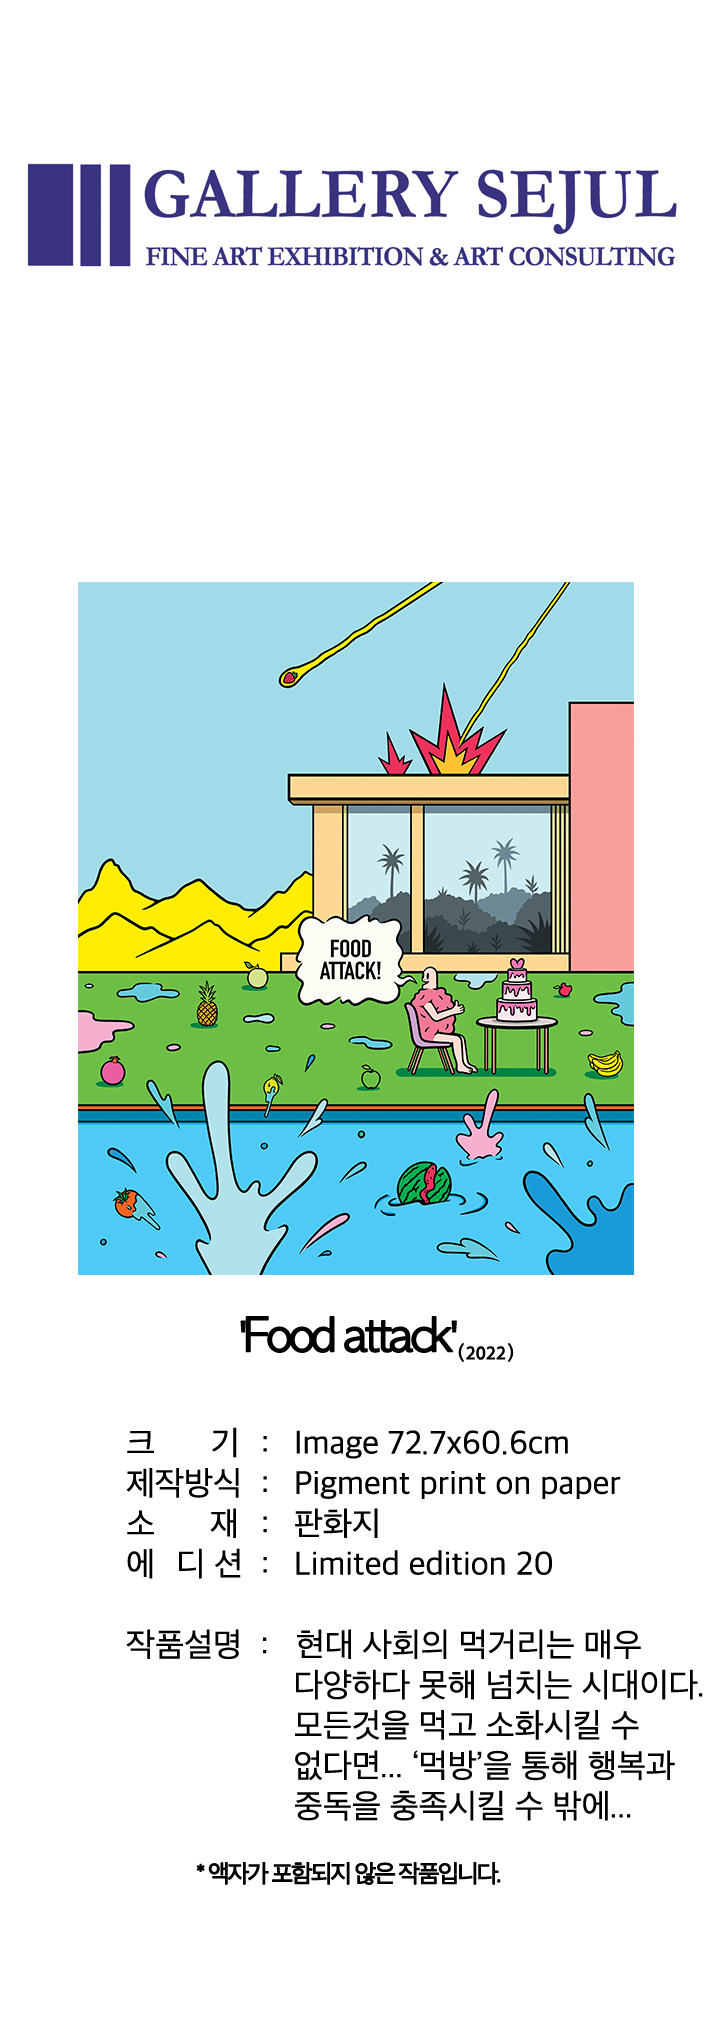 Foodattack_174320.jpg